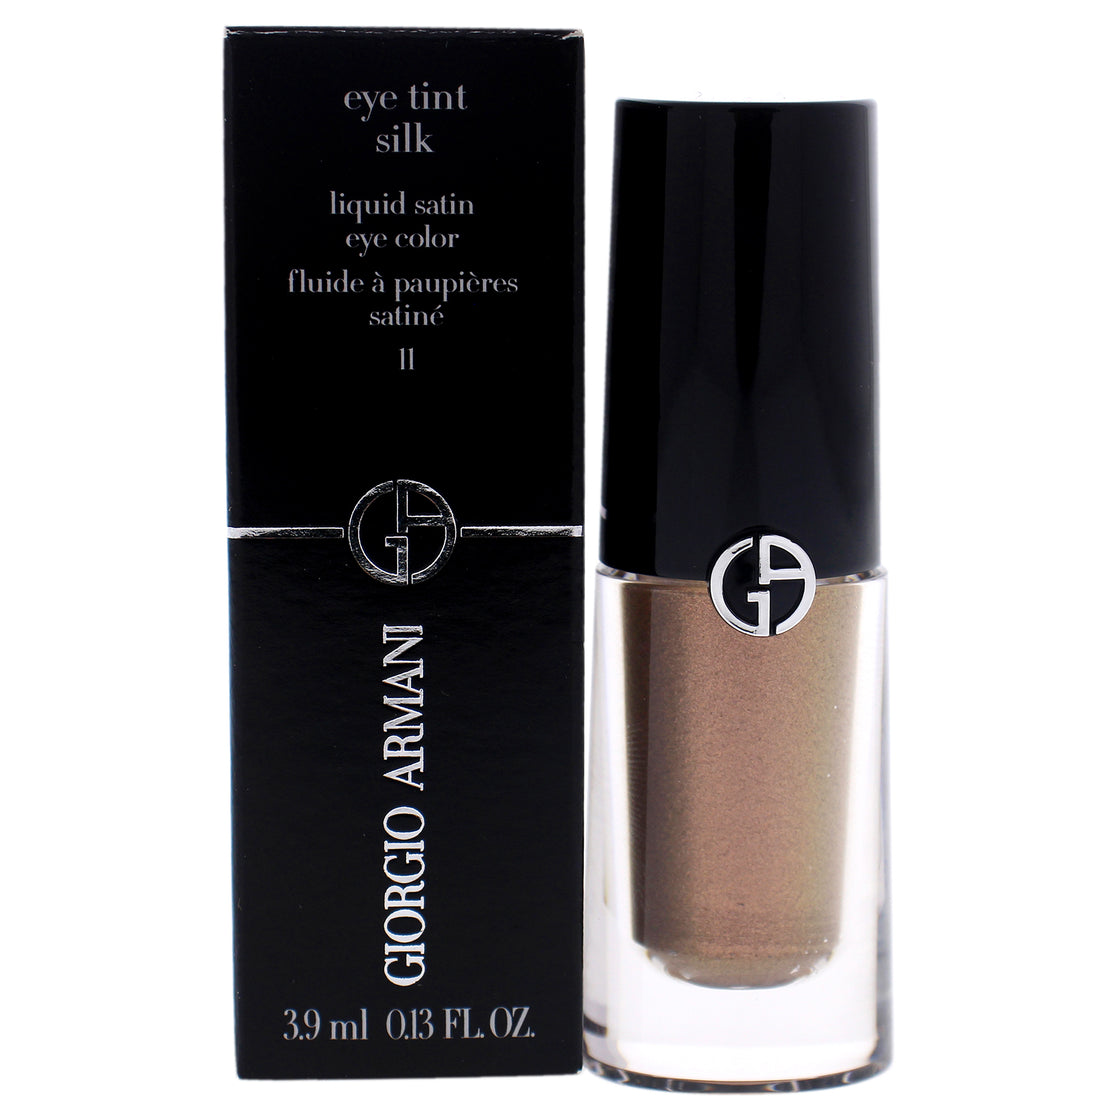 Eye Tint Silk Liquid Satin Eyeshadow - 11 Rose Ashes by Giorgio Armani for Women - 0.13 oz Eyeshadow